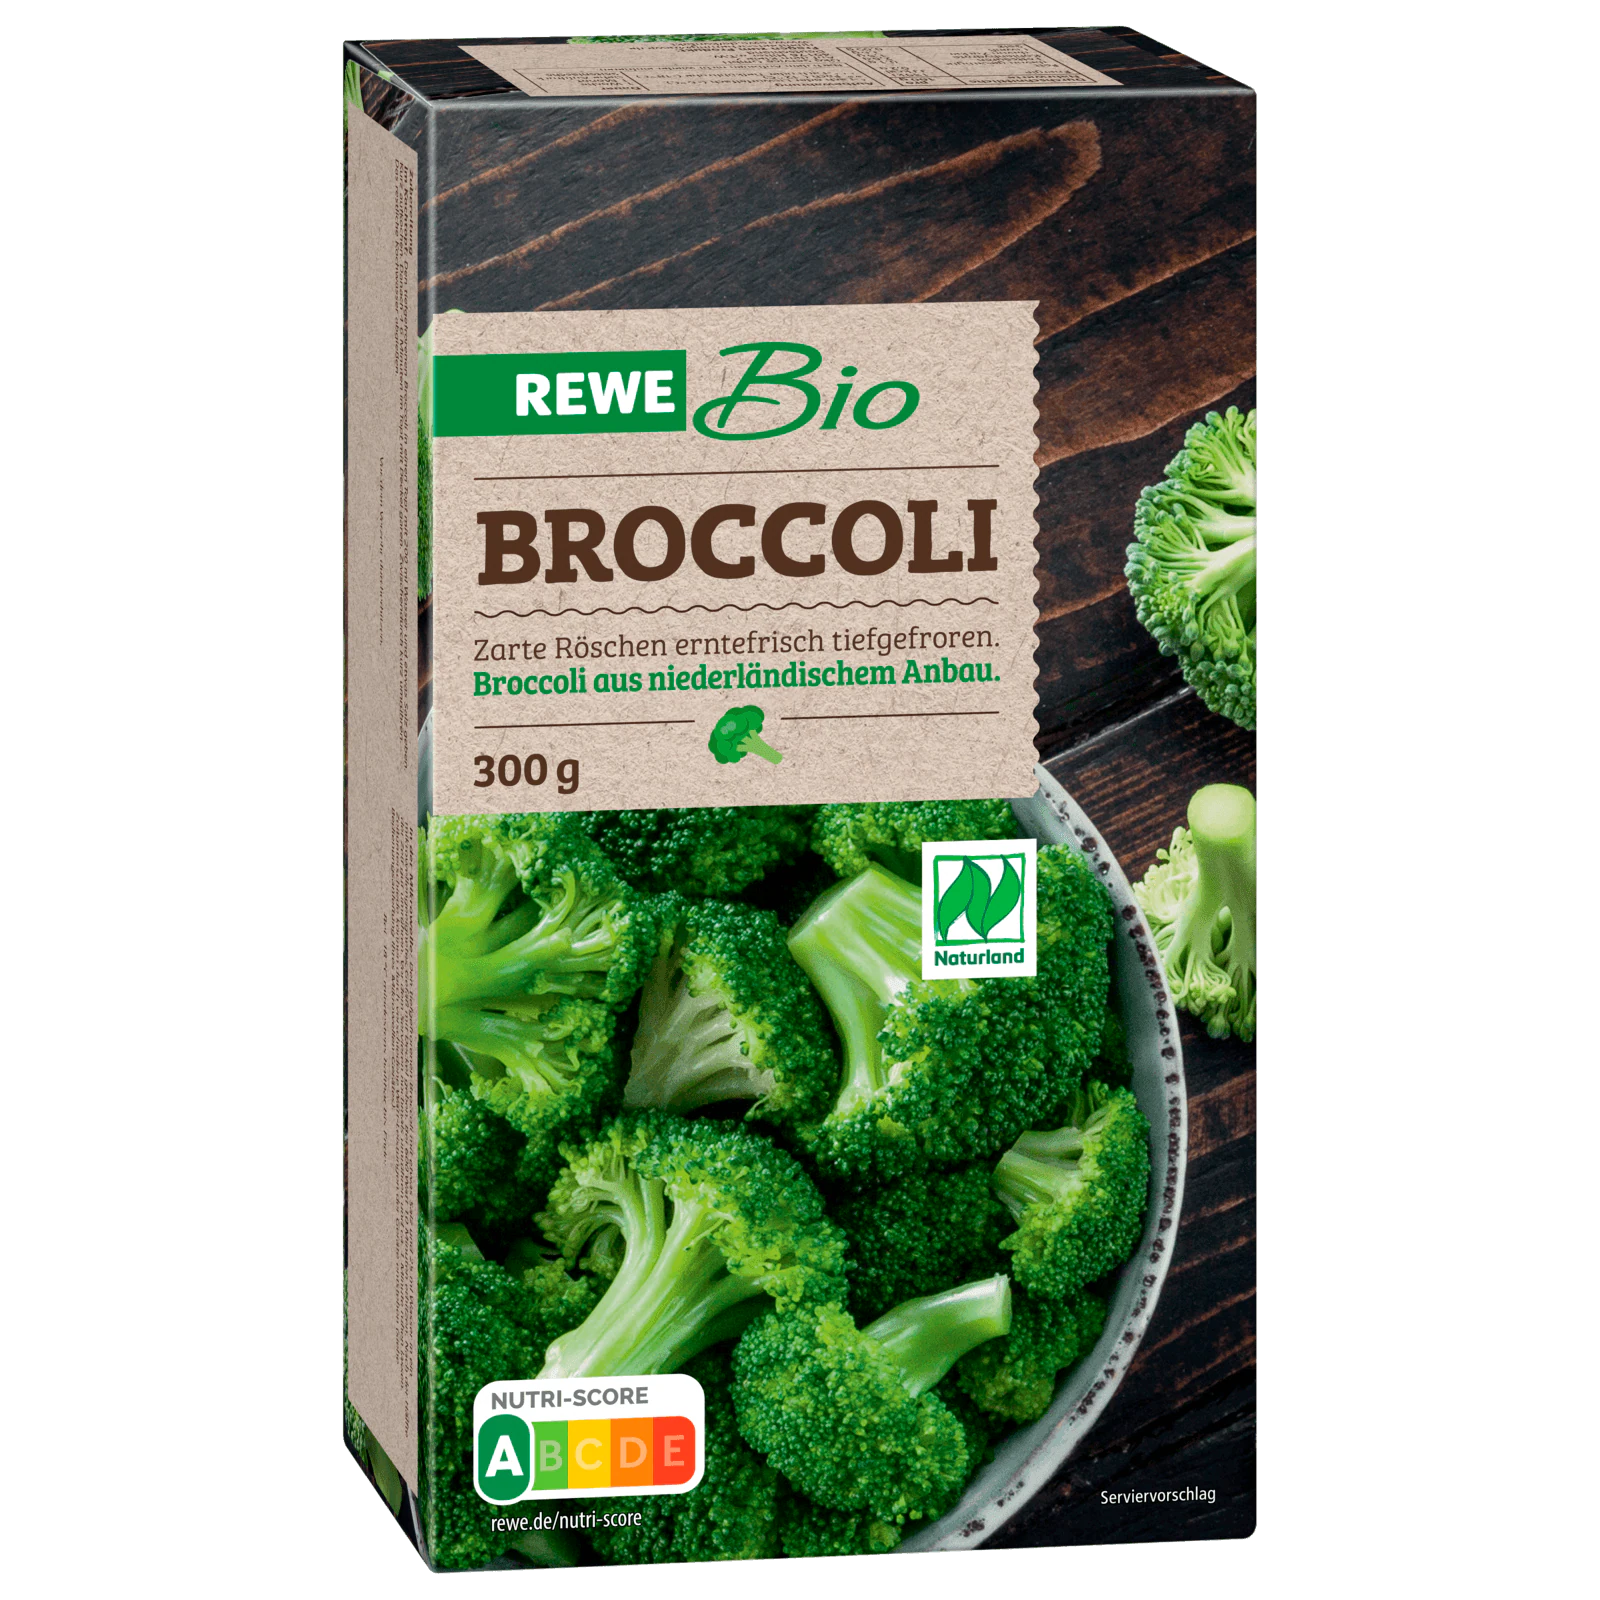 REWE Bio Broccoli tiefgefroren 300g bestellen! online REWE bei